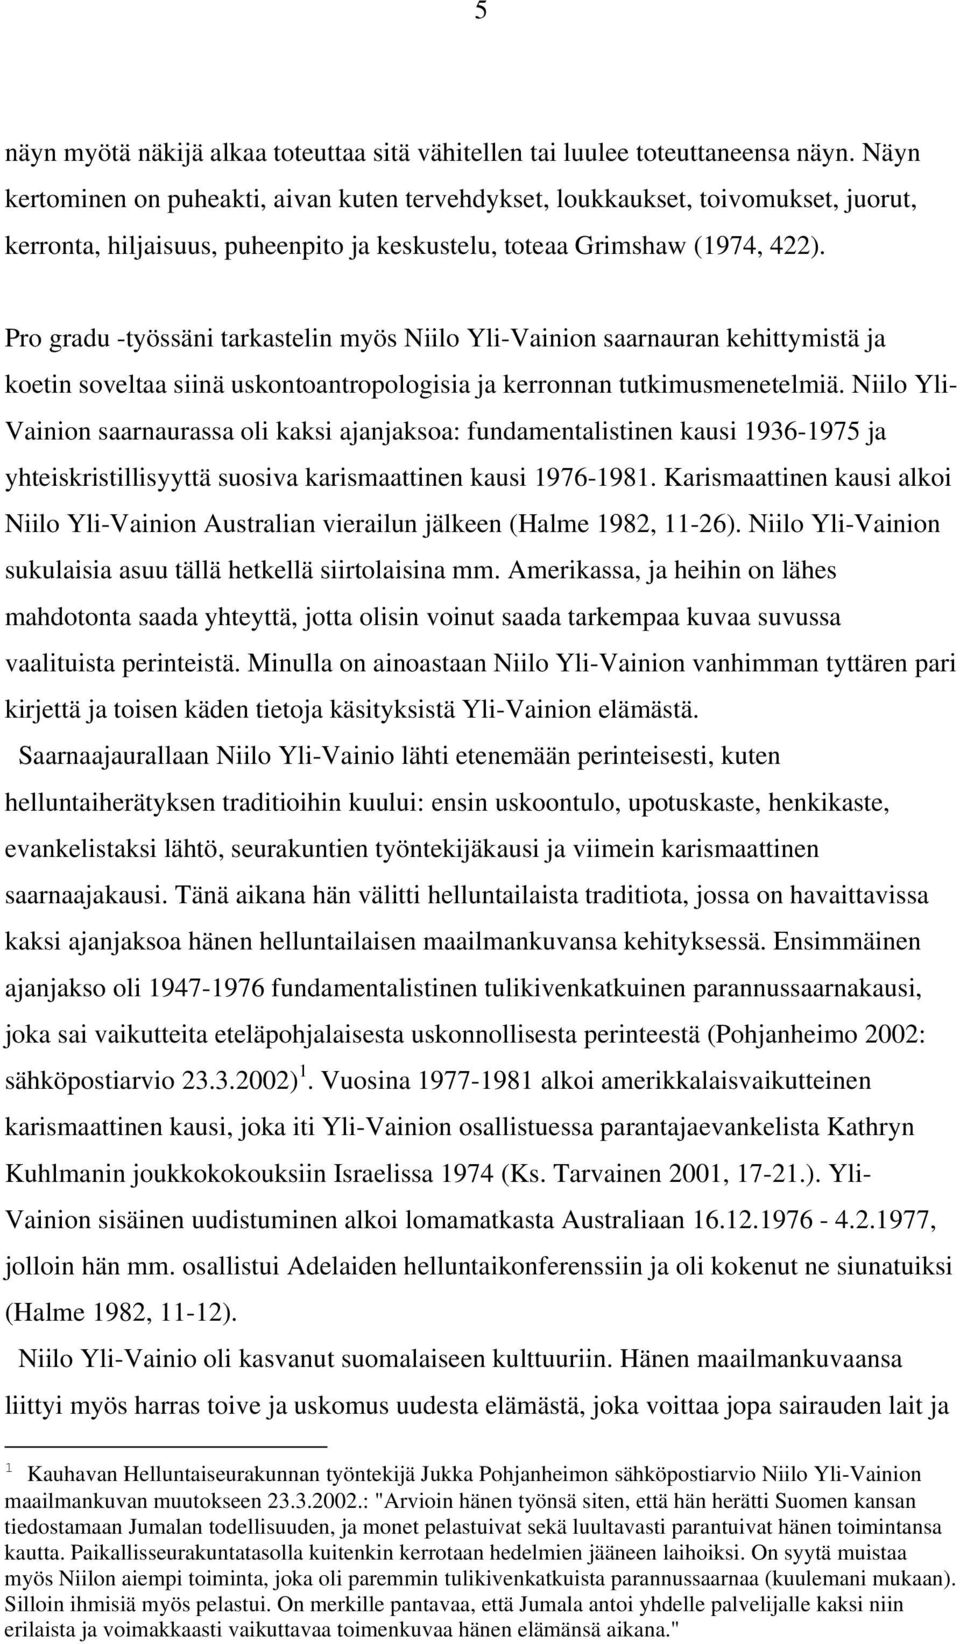 Pro gradu -työssäni tarkastelin myös Niilo Yli-Vainion saarnauran kehittymistä ja koetin soveltaa siinä uskontoantropologisia ja kerronnan tutkimusmenetelmiä.